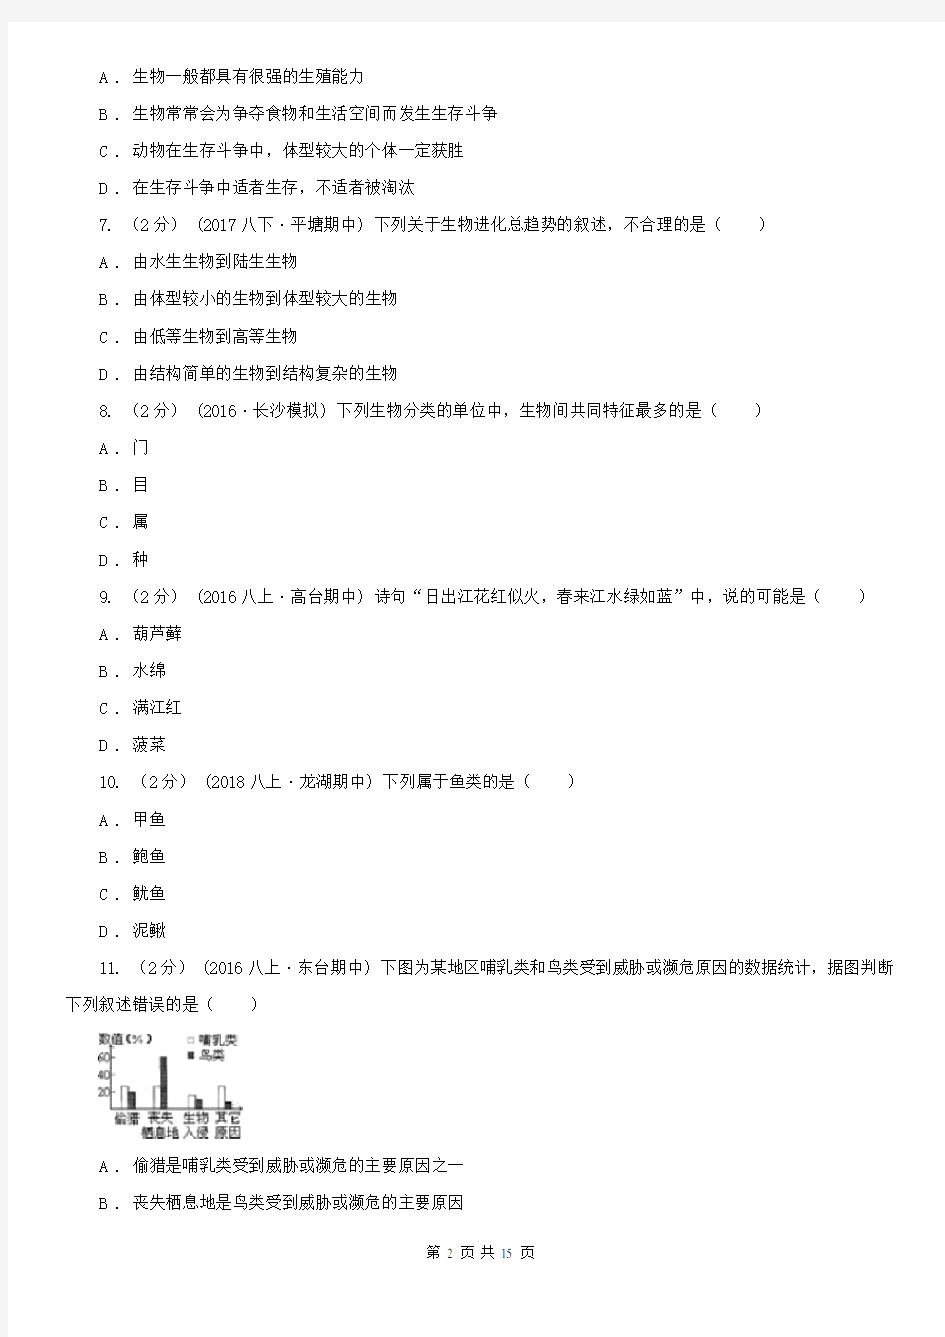 甘肃省2020版八年级上学期生物期中考试试卷(II)卷